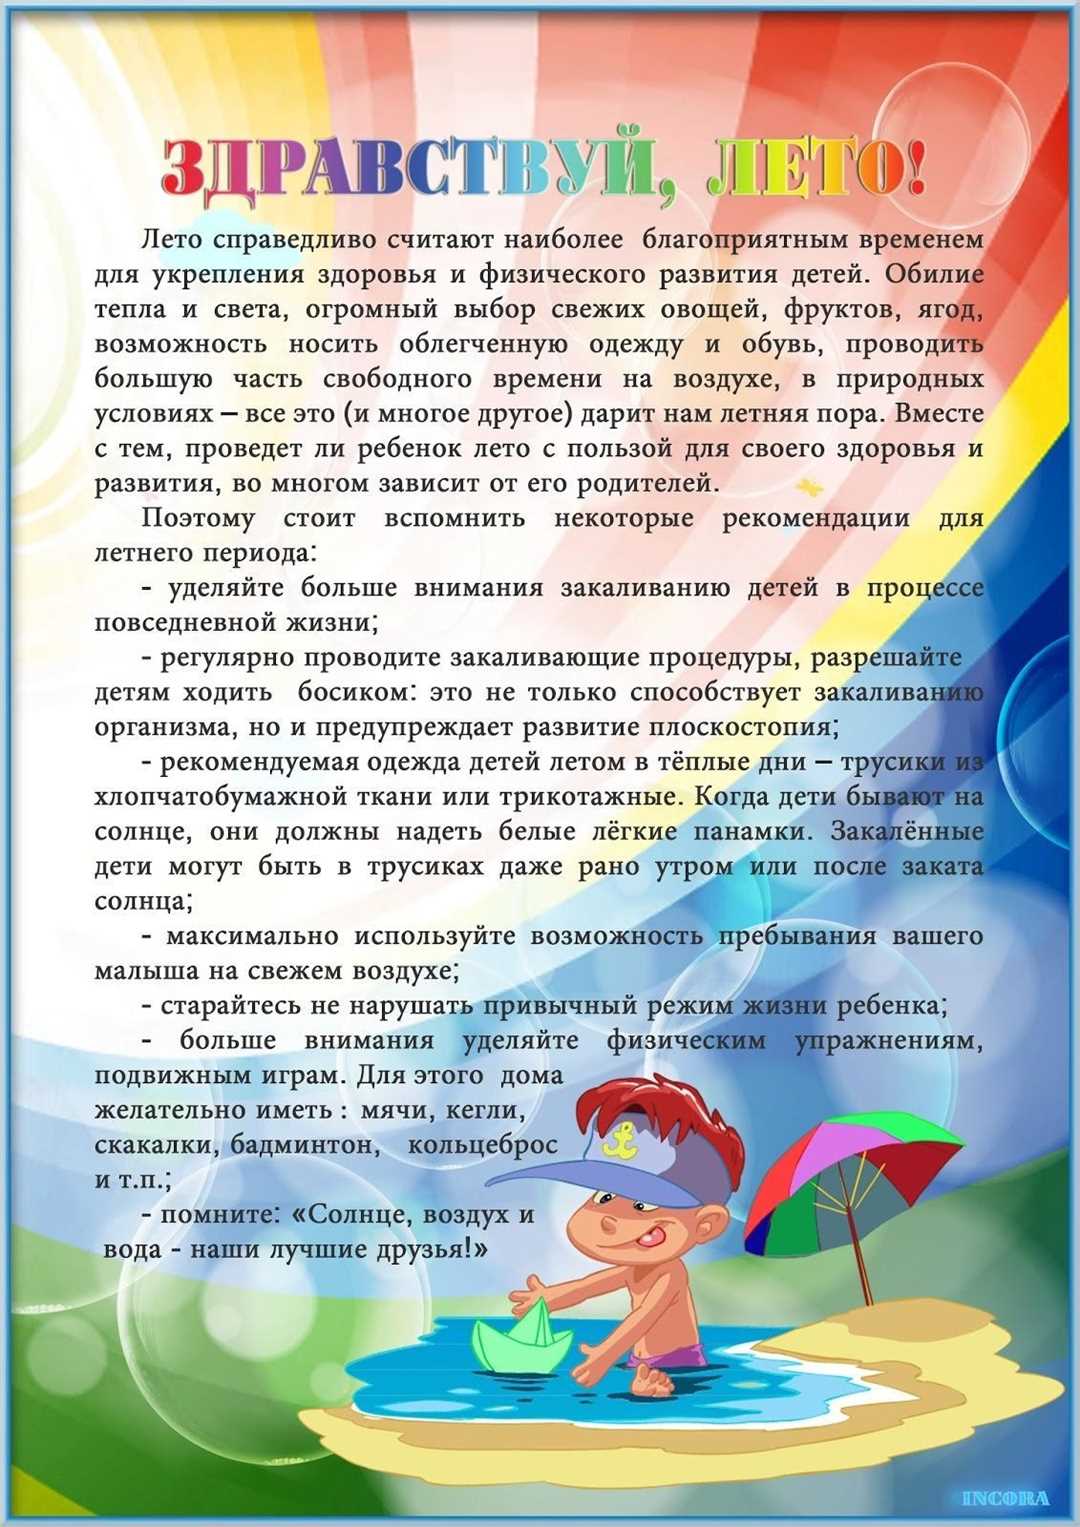 Детский отдых и туризм в России